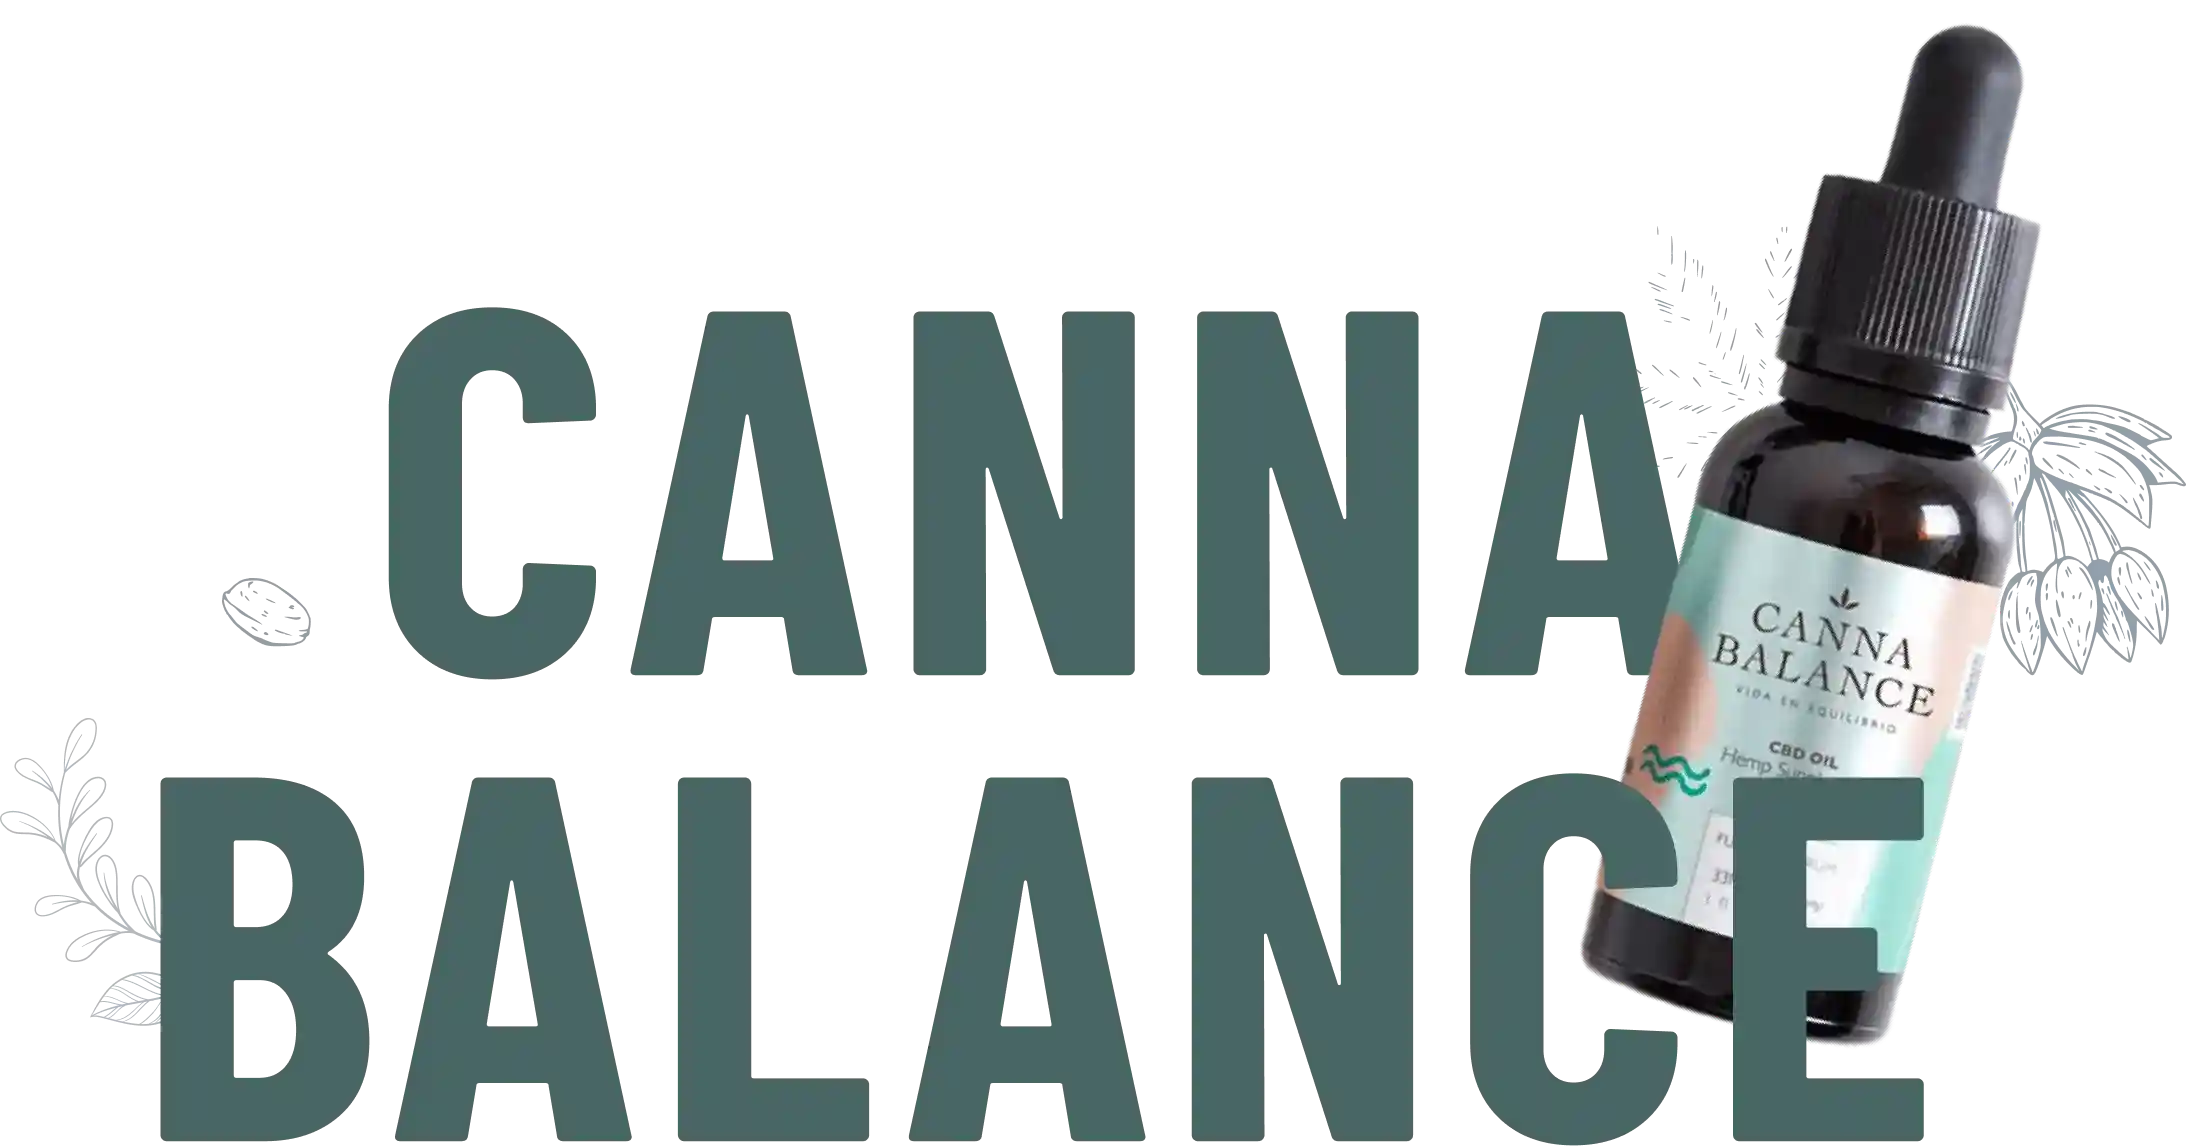 Cannabalance